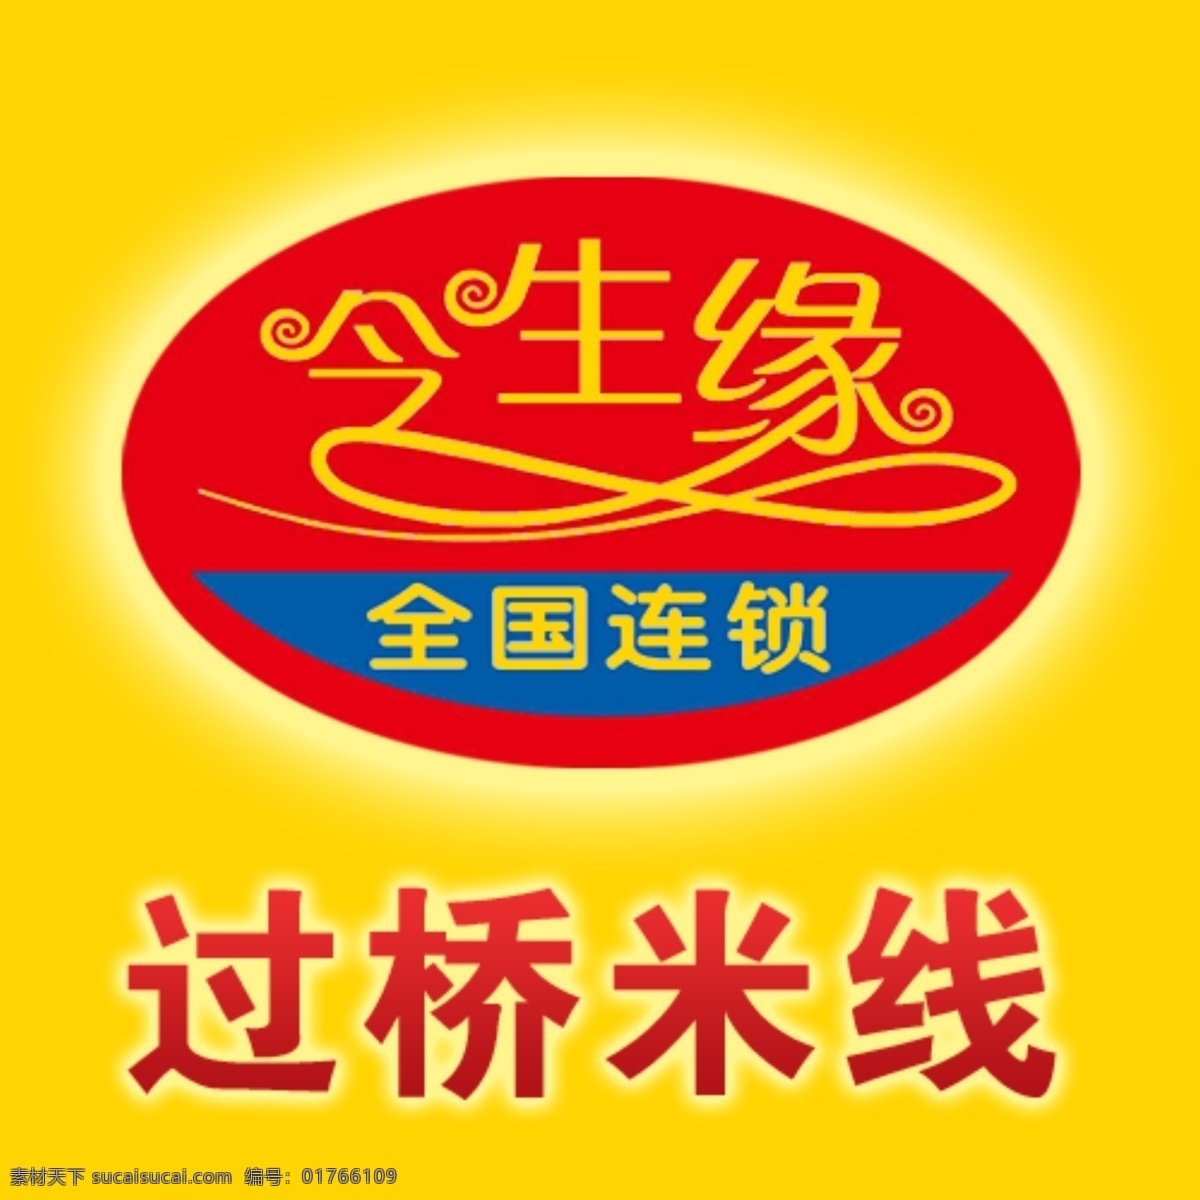 今 生缘 米线 logo 今生缘 app图标 黄色